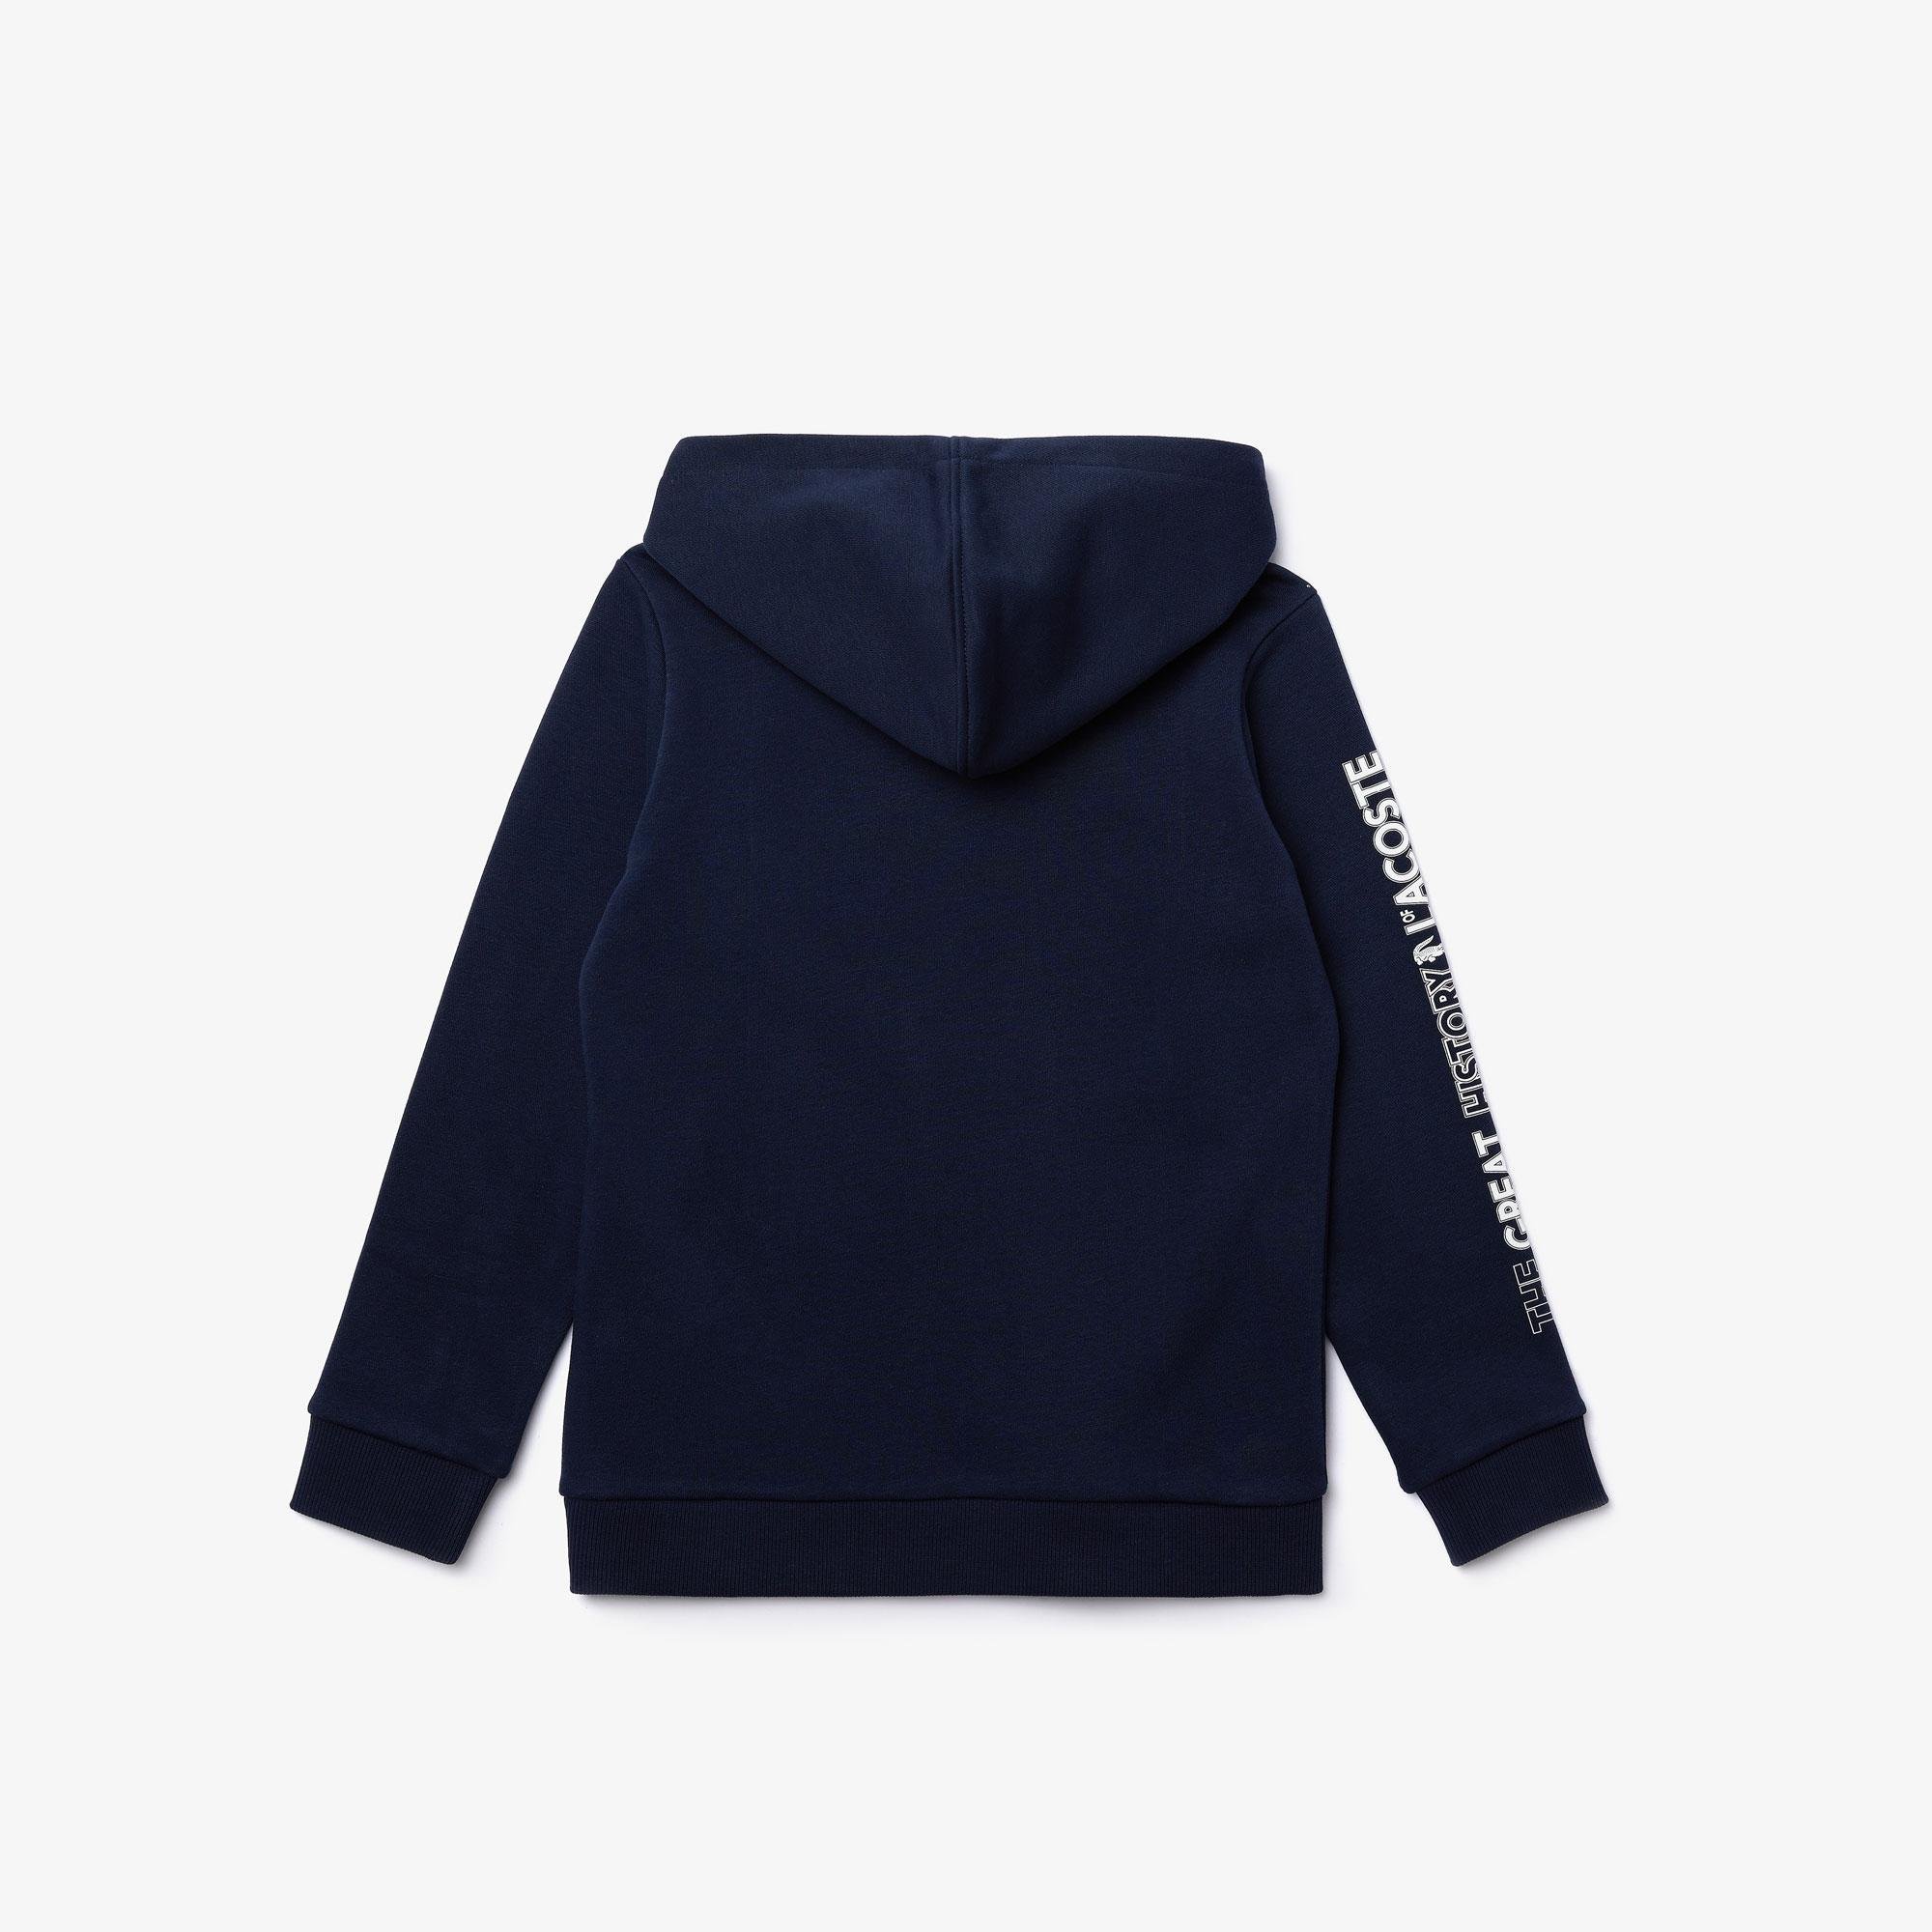 Lacoste Boy’s Heritage Print Hooded Fleece Sweatshirt